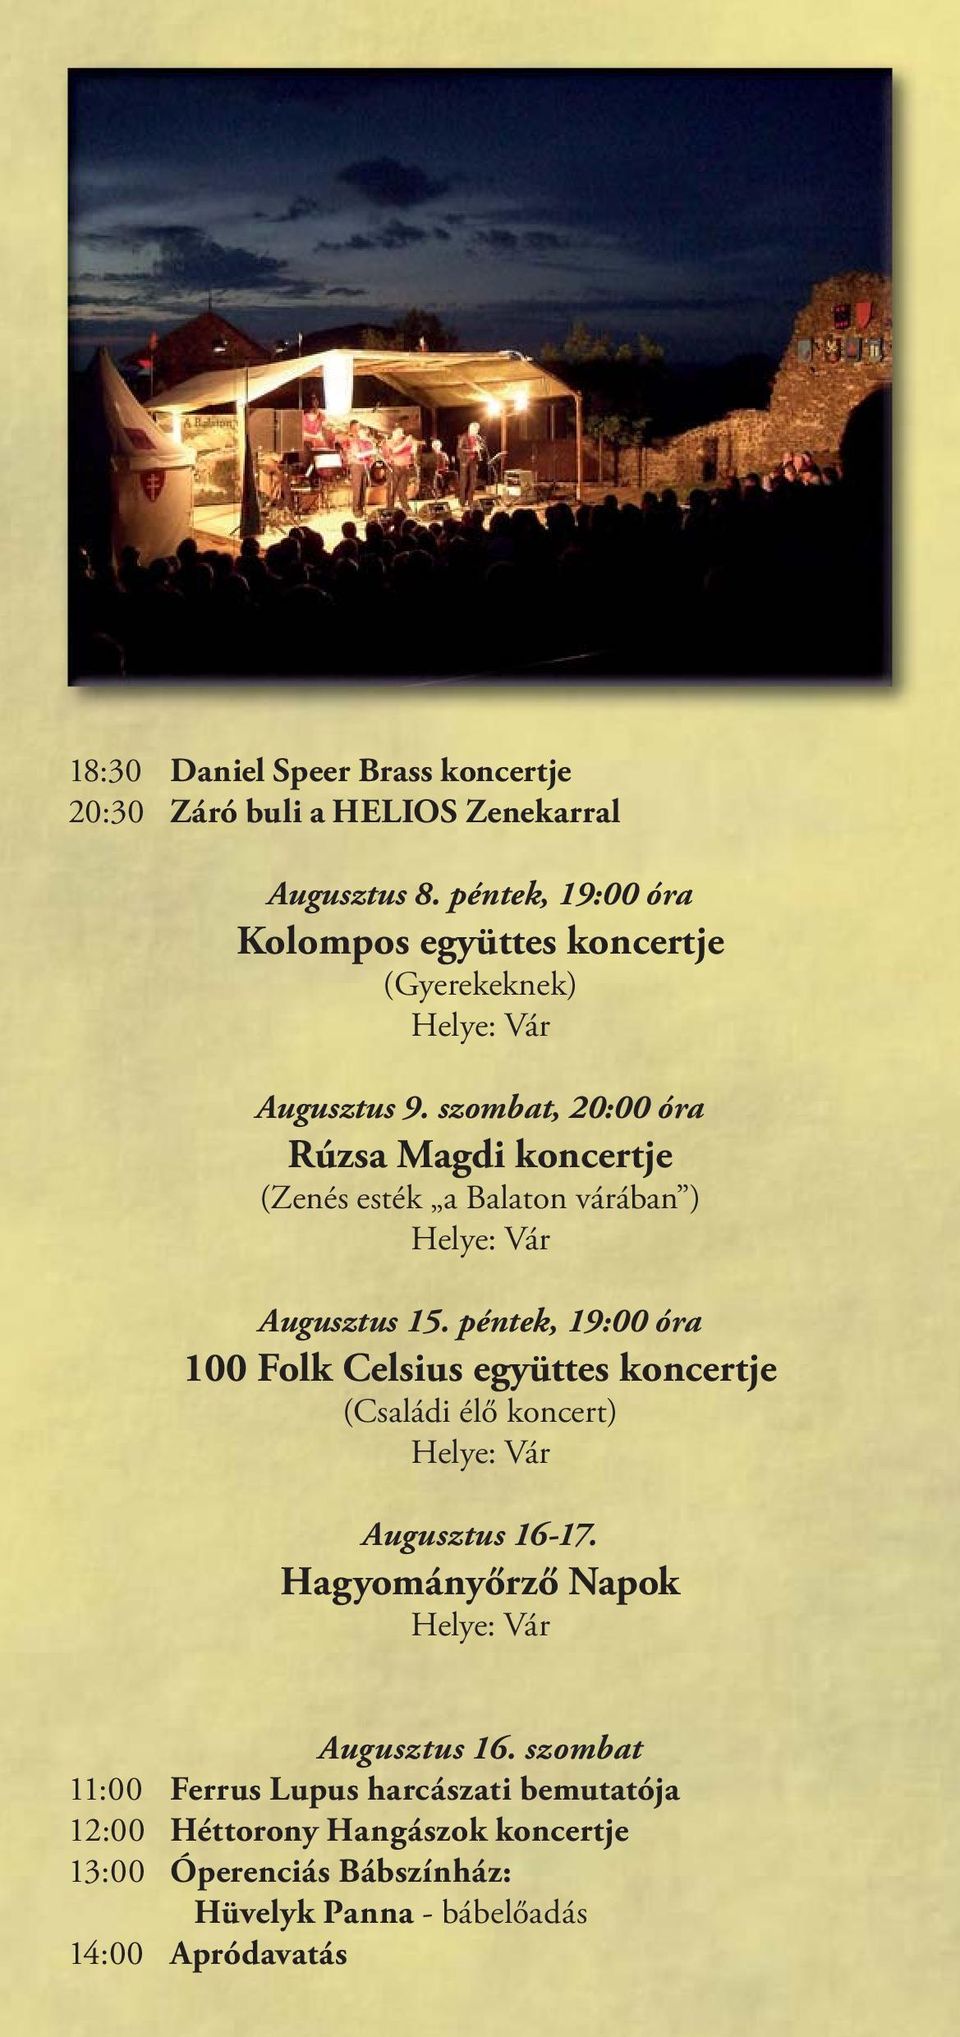 szombat, 20:00 óra Rúzsa Magdi koncertje (Zenés esték a Balaton várában ) Augusztus 15.